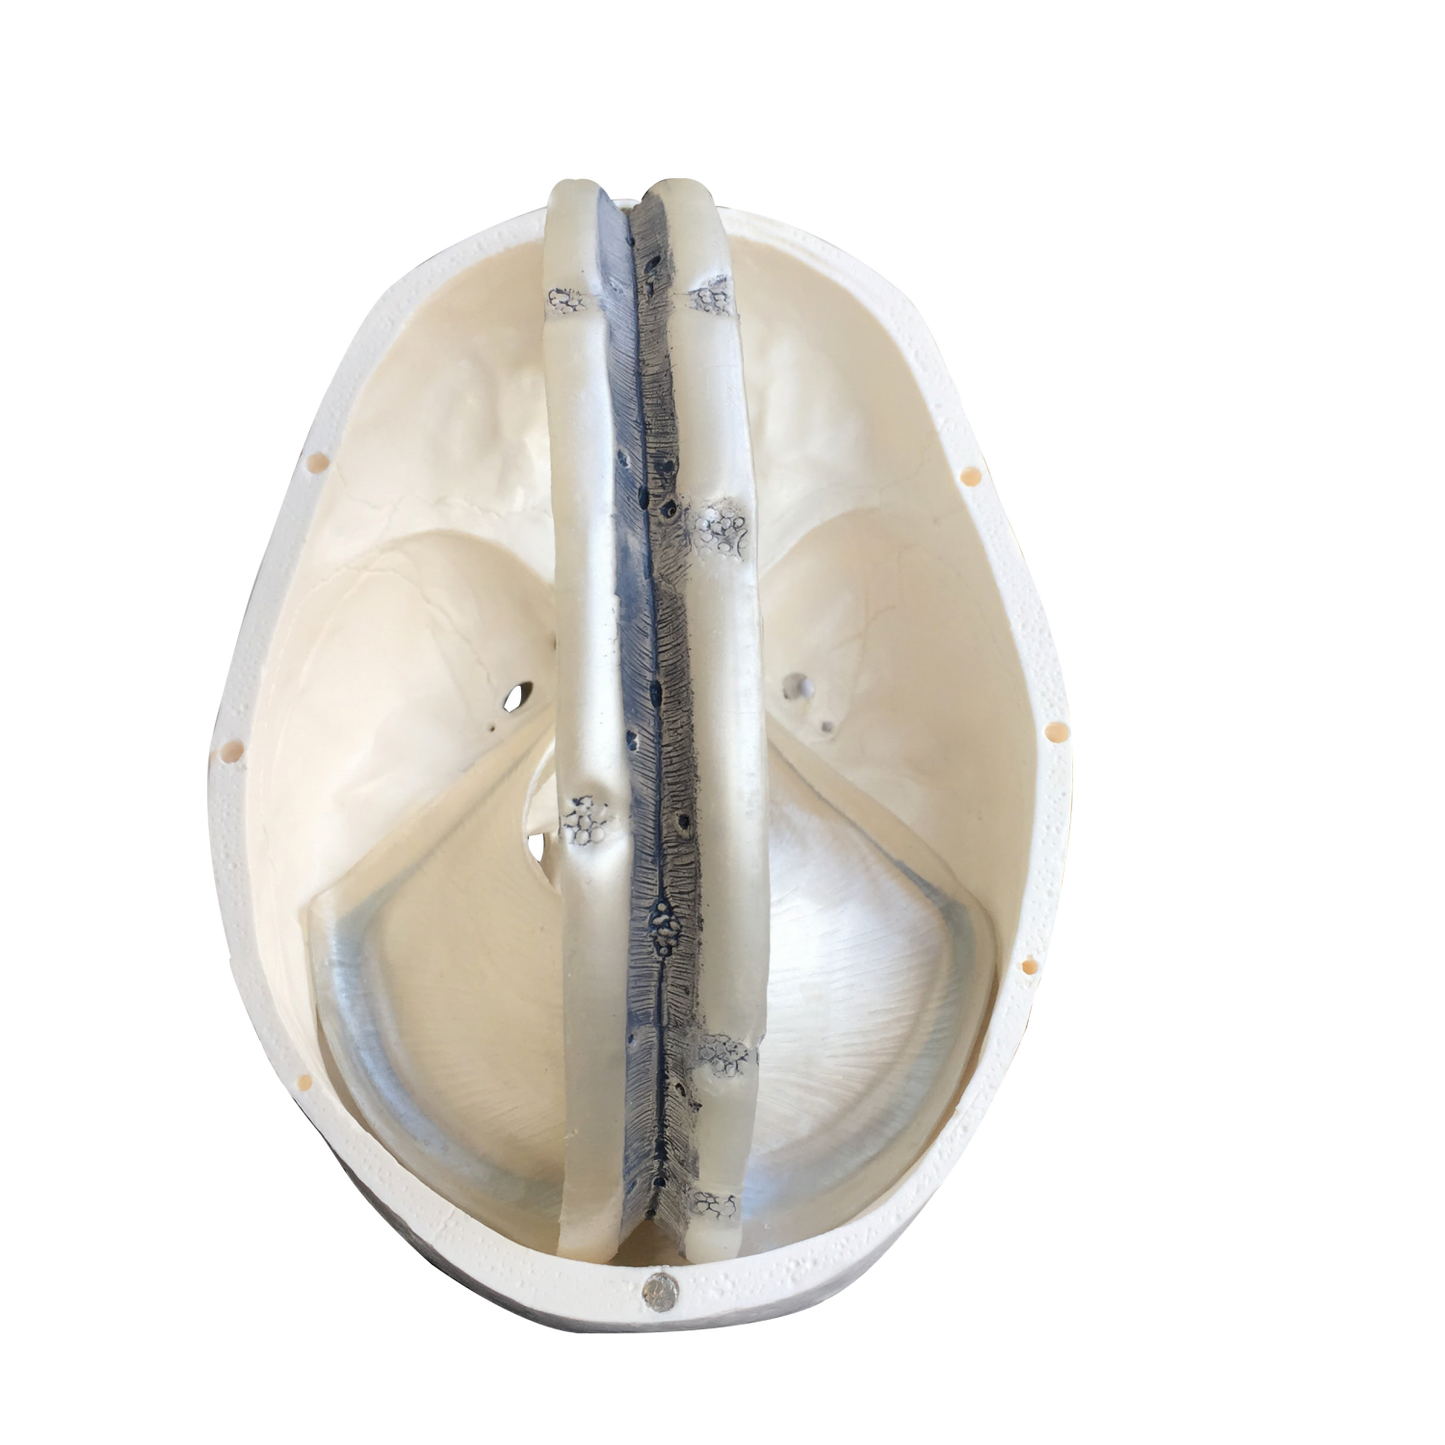 Skallemodell Inkl. dural septa t.ex. falx cerebri från dura mater